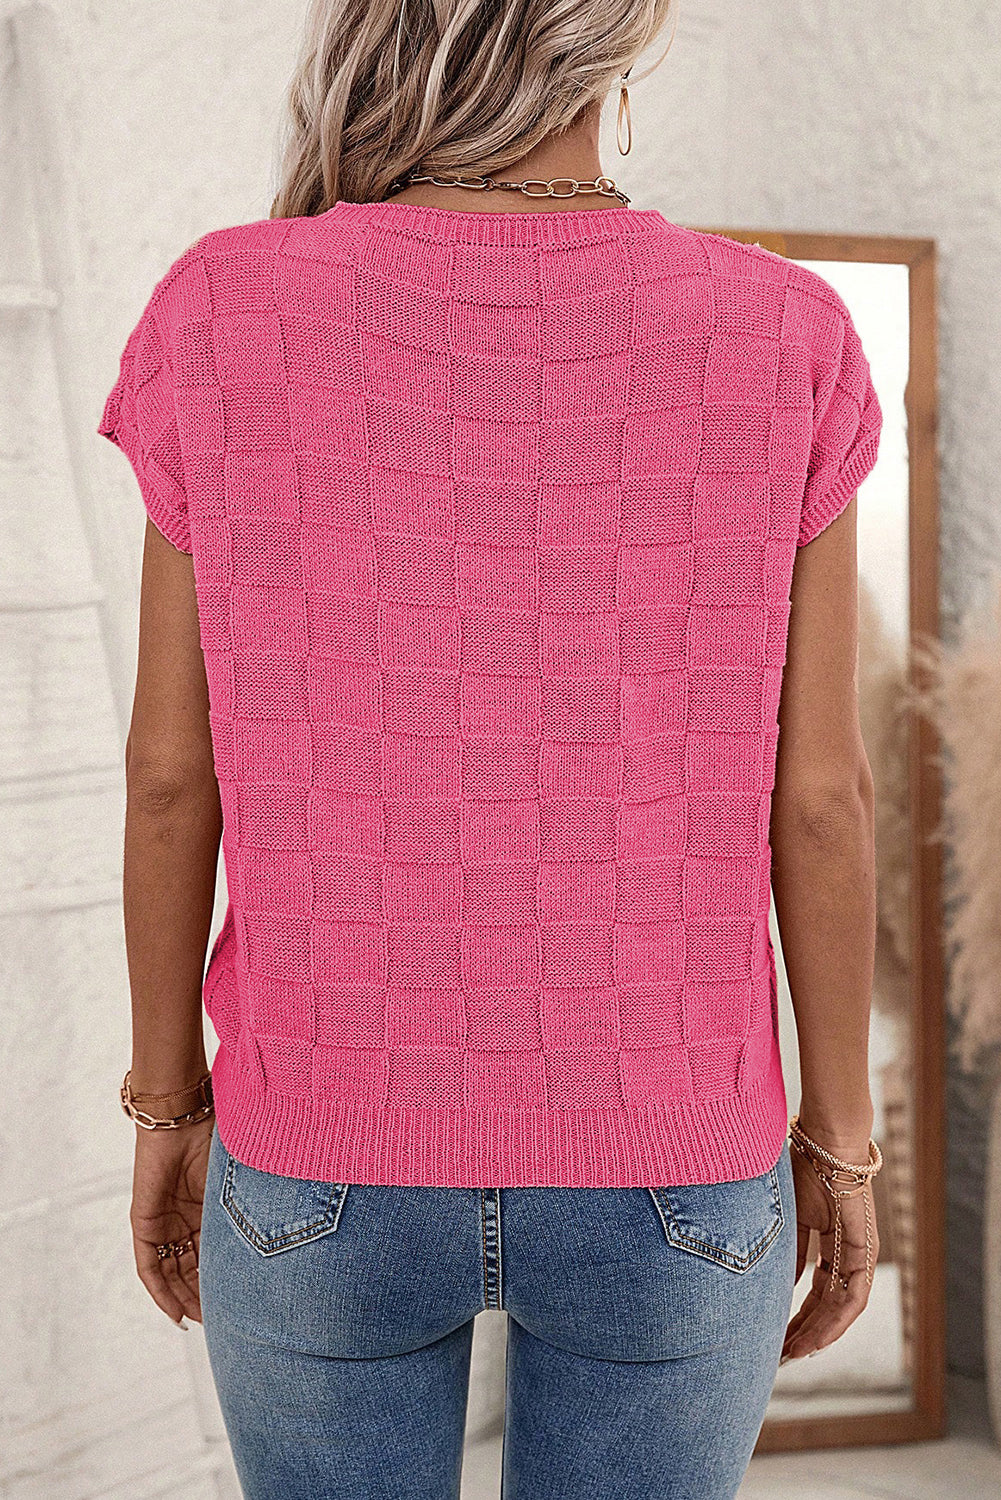 Maglione a maniche corte lavorato a maglia testurizzata rosa brillante